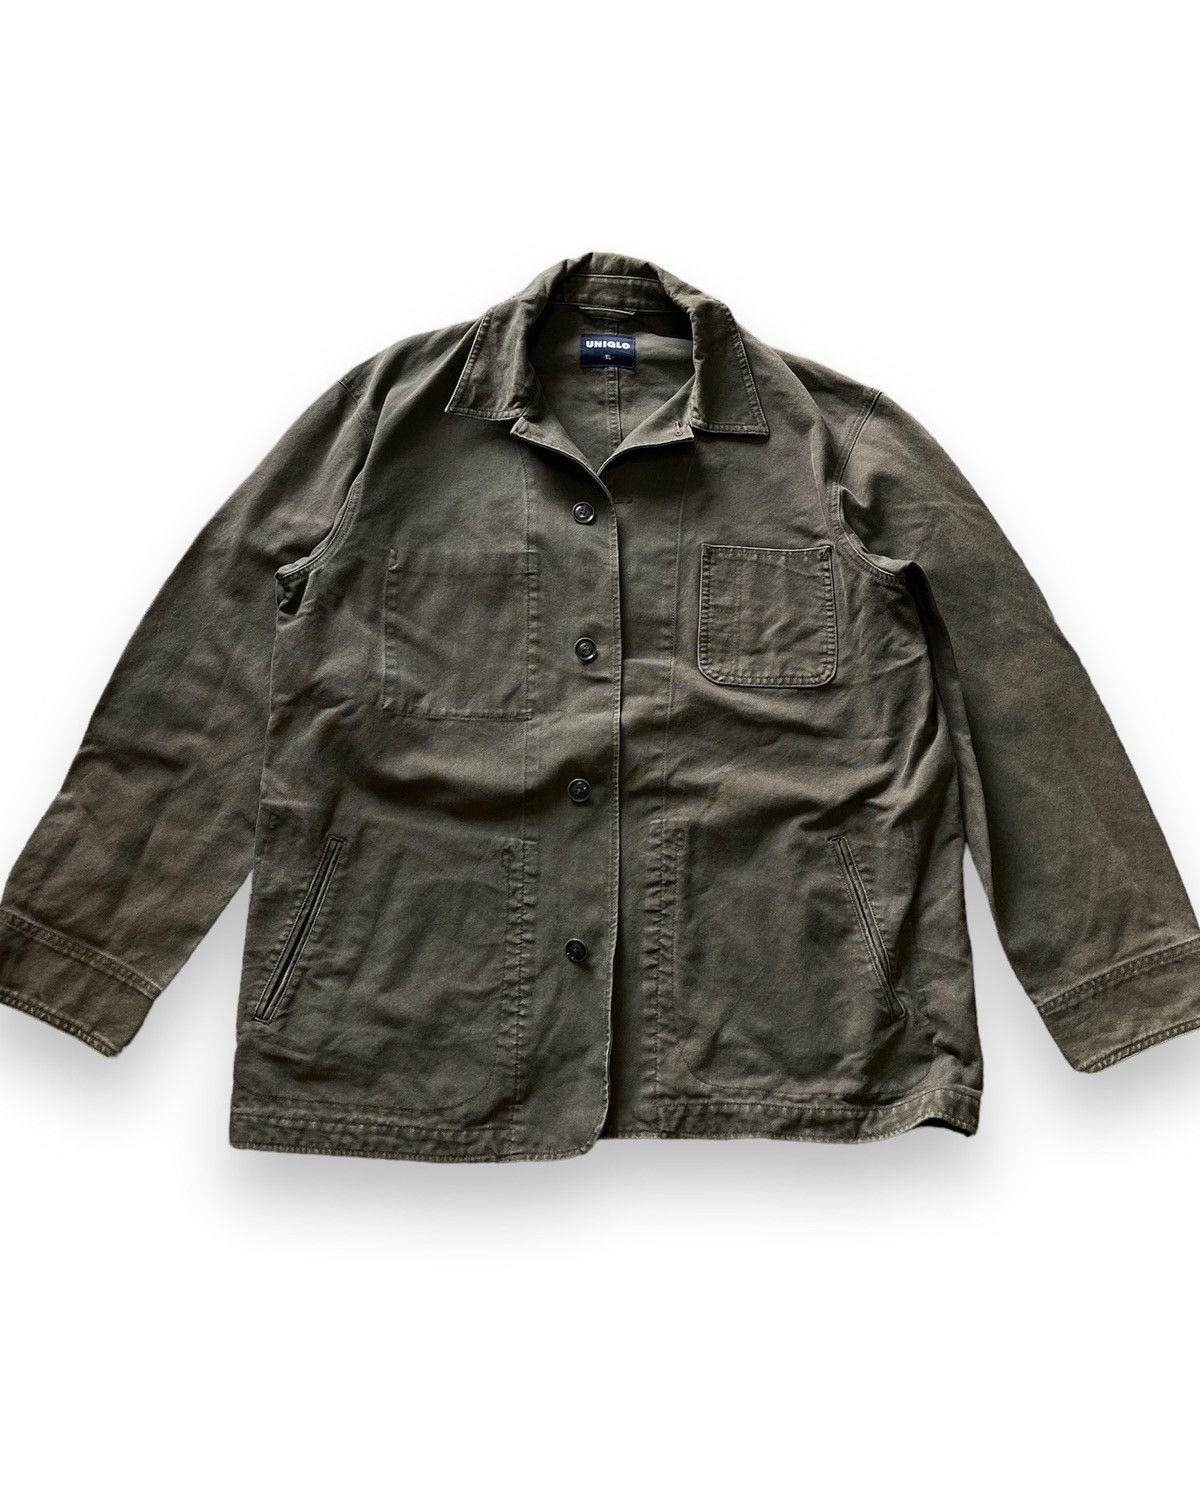 Uniqlo Chore Jacket Japan Size XL - 1